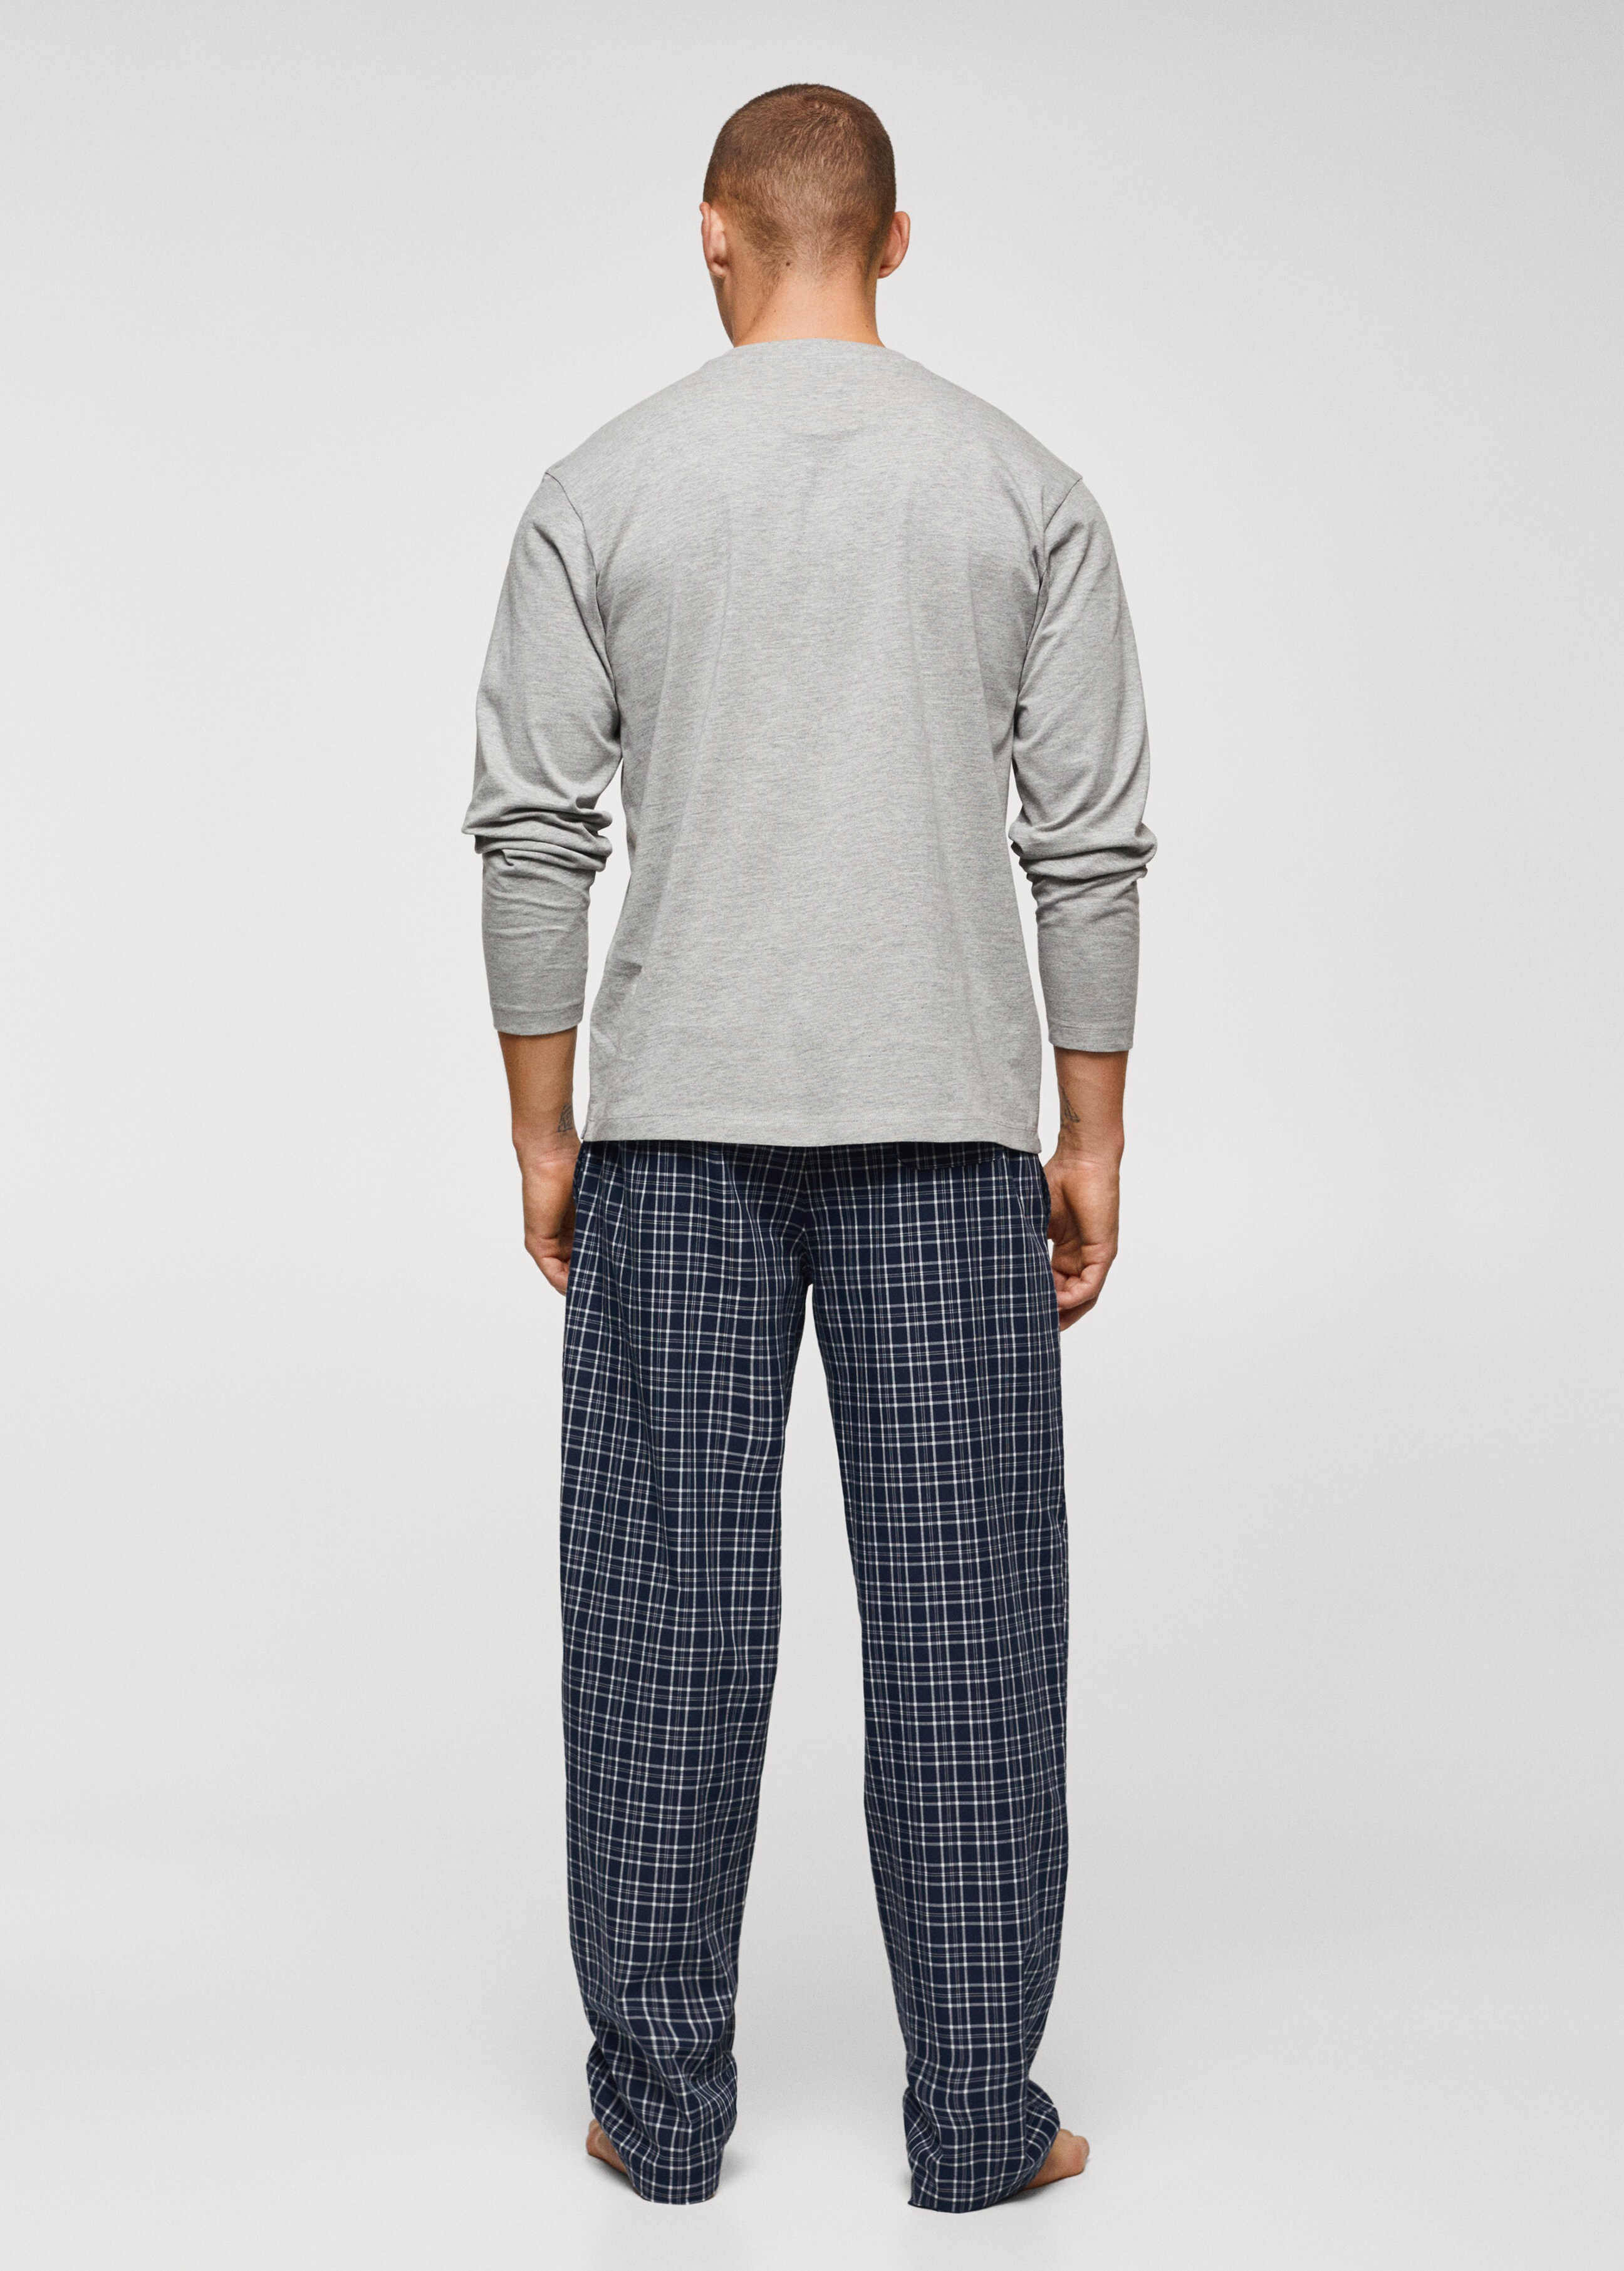 Pyjama-Pack aus gemusterter Baumwolle - Rückseite des Artikels